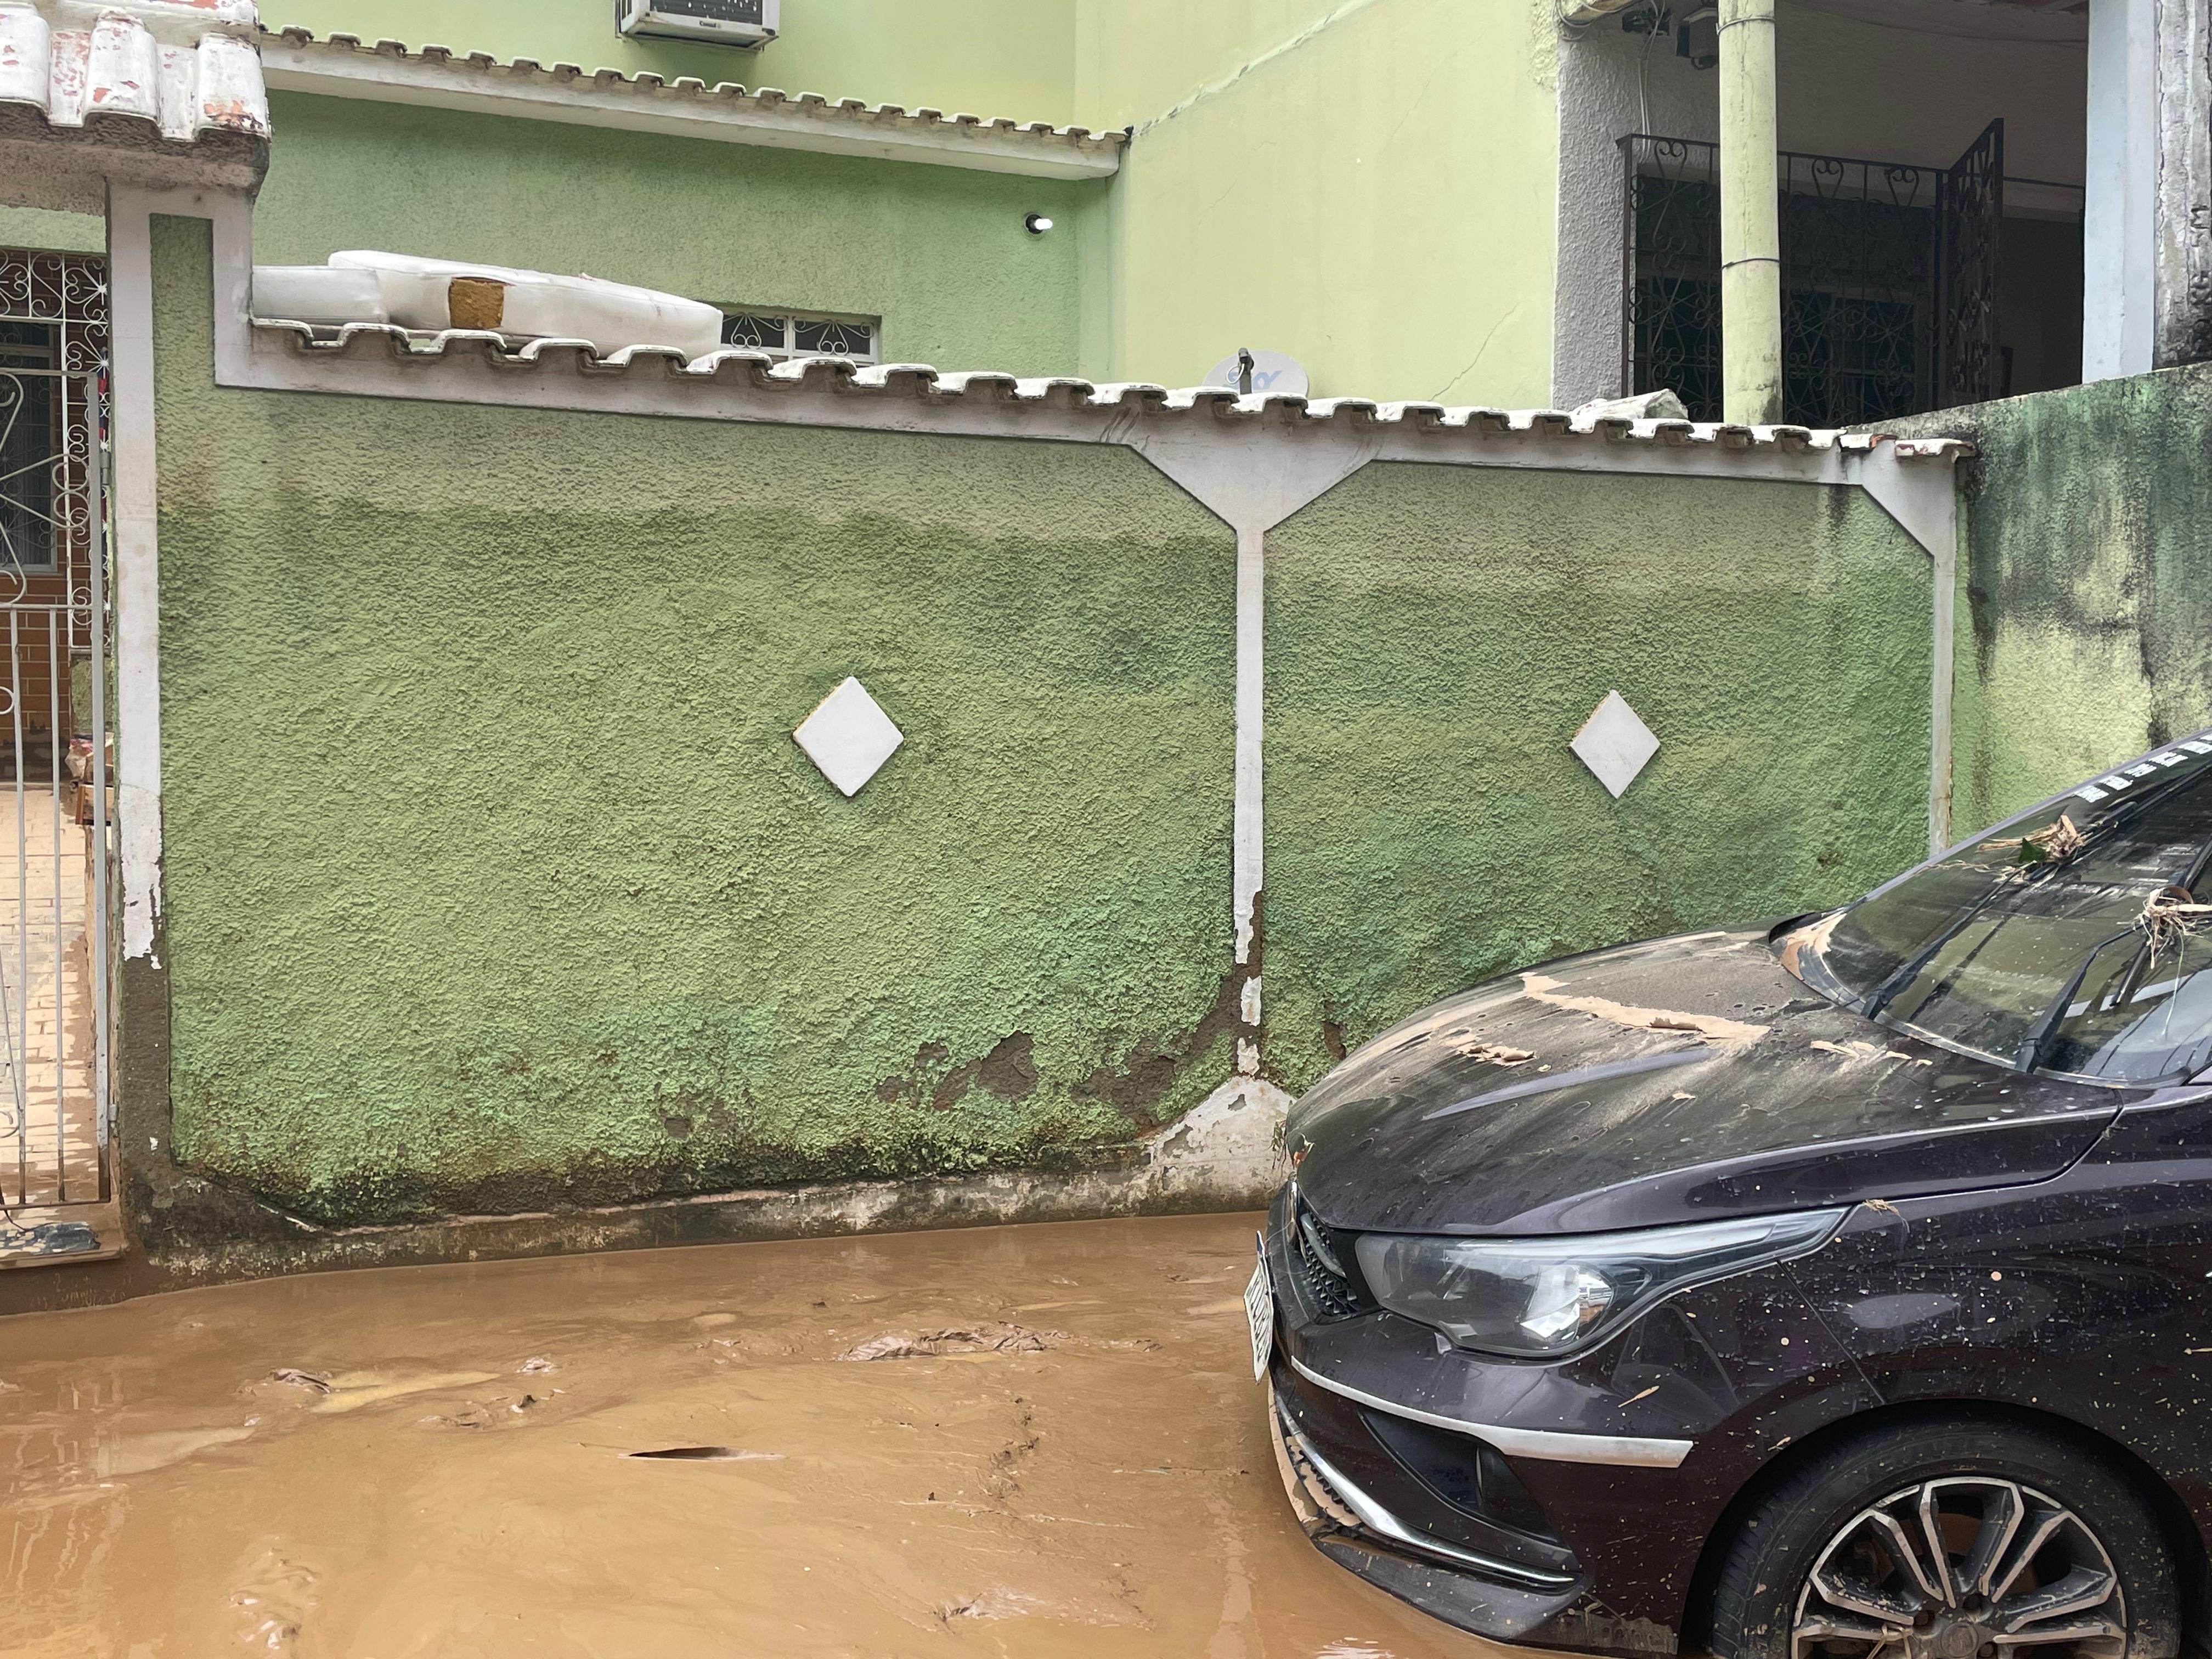 Casas ficam alagadas até o teto após temporal em Paracambi; cerca de 200 estão desalojados 